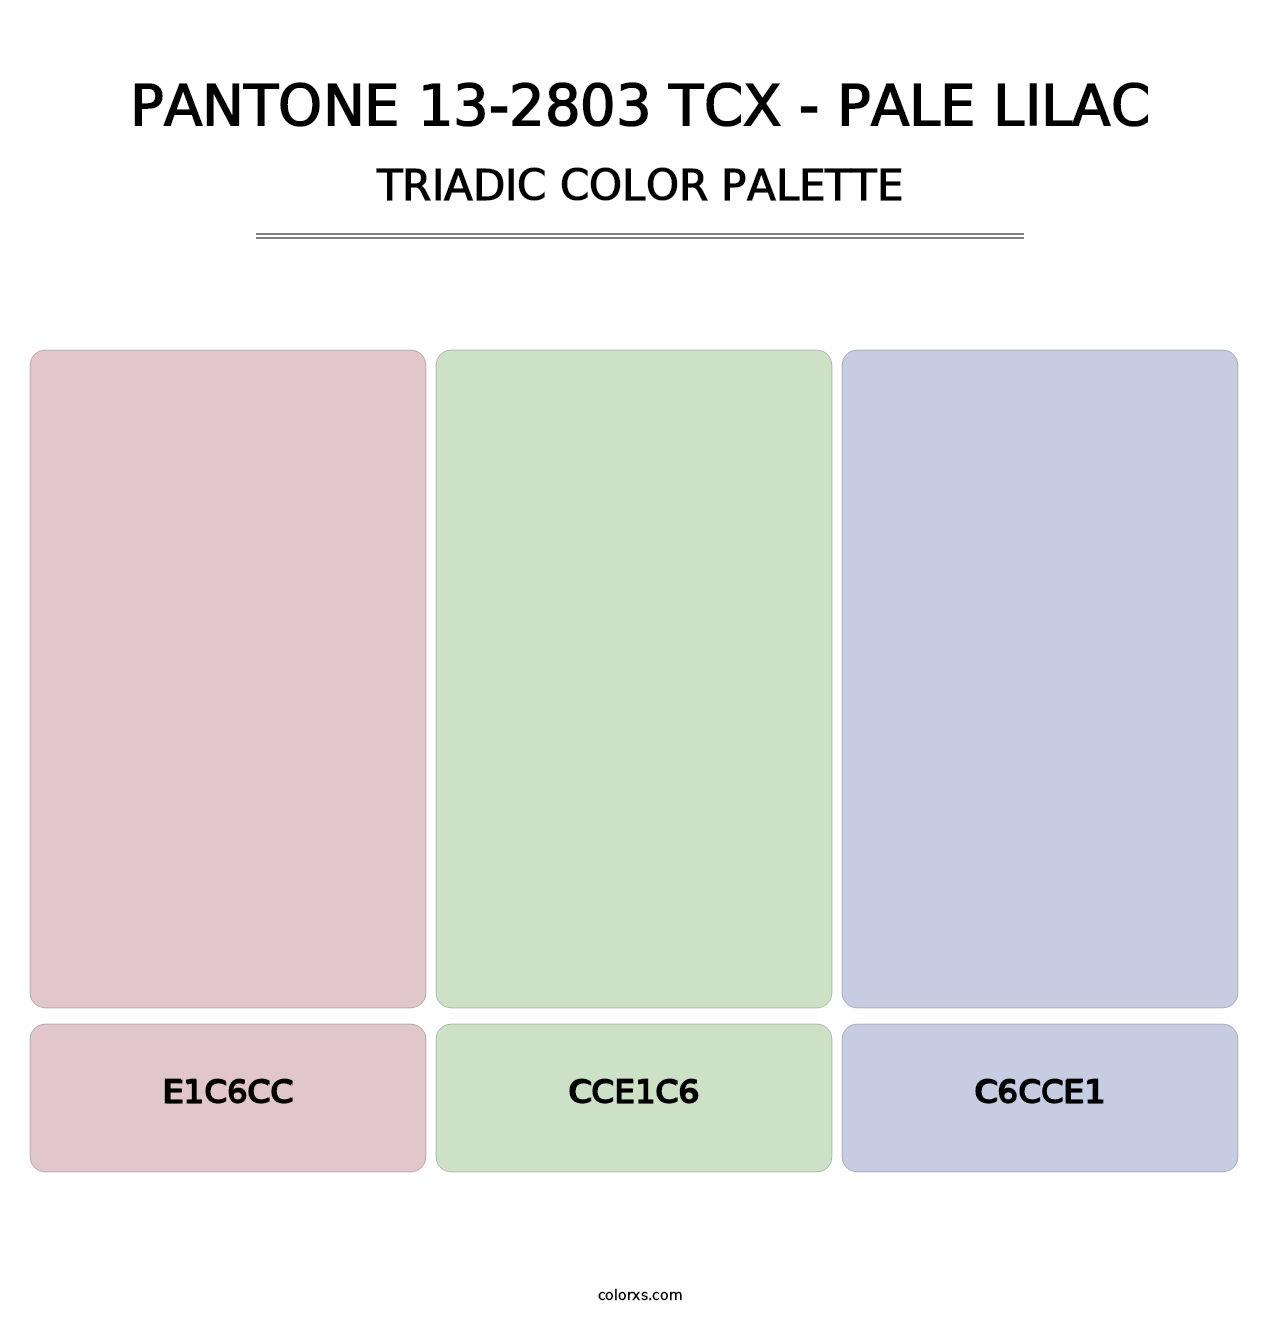 PANTONE 13-2803 TCX - Pale Lilac - Triadic Color Palette